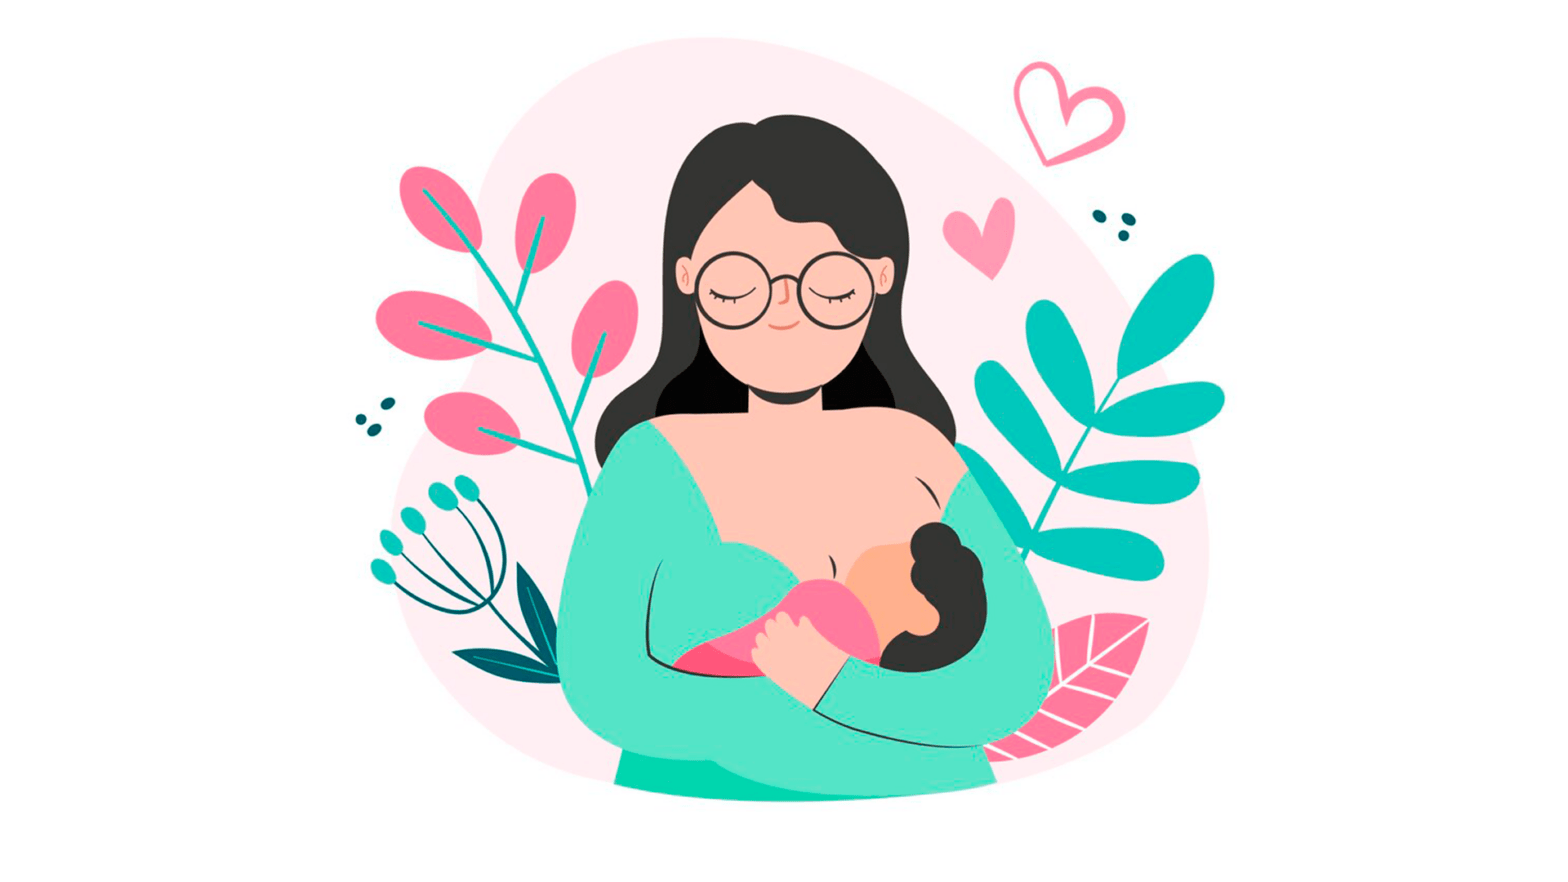 La importancia de la Lactancia Materna – Tecnológico Nacional de México  Campus Culiacán